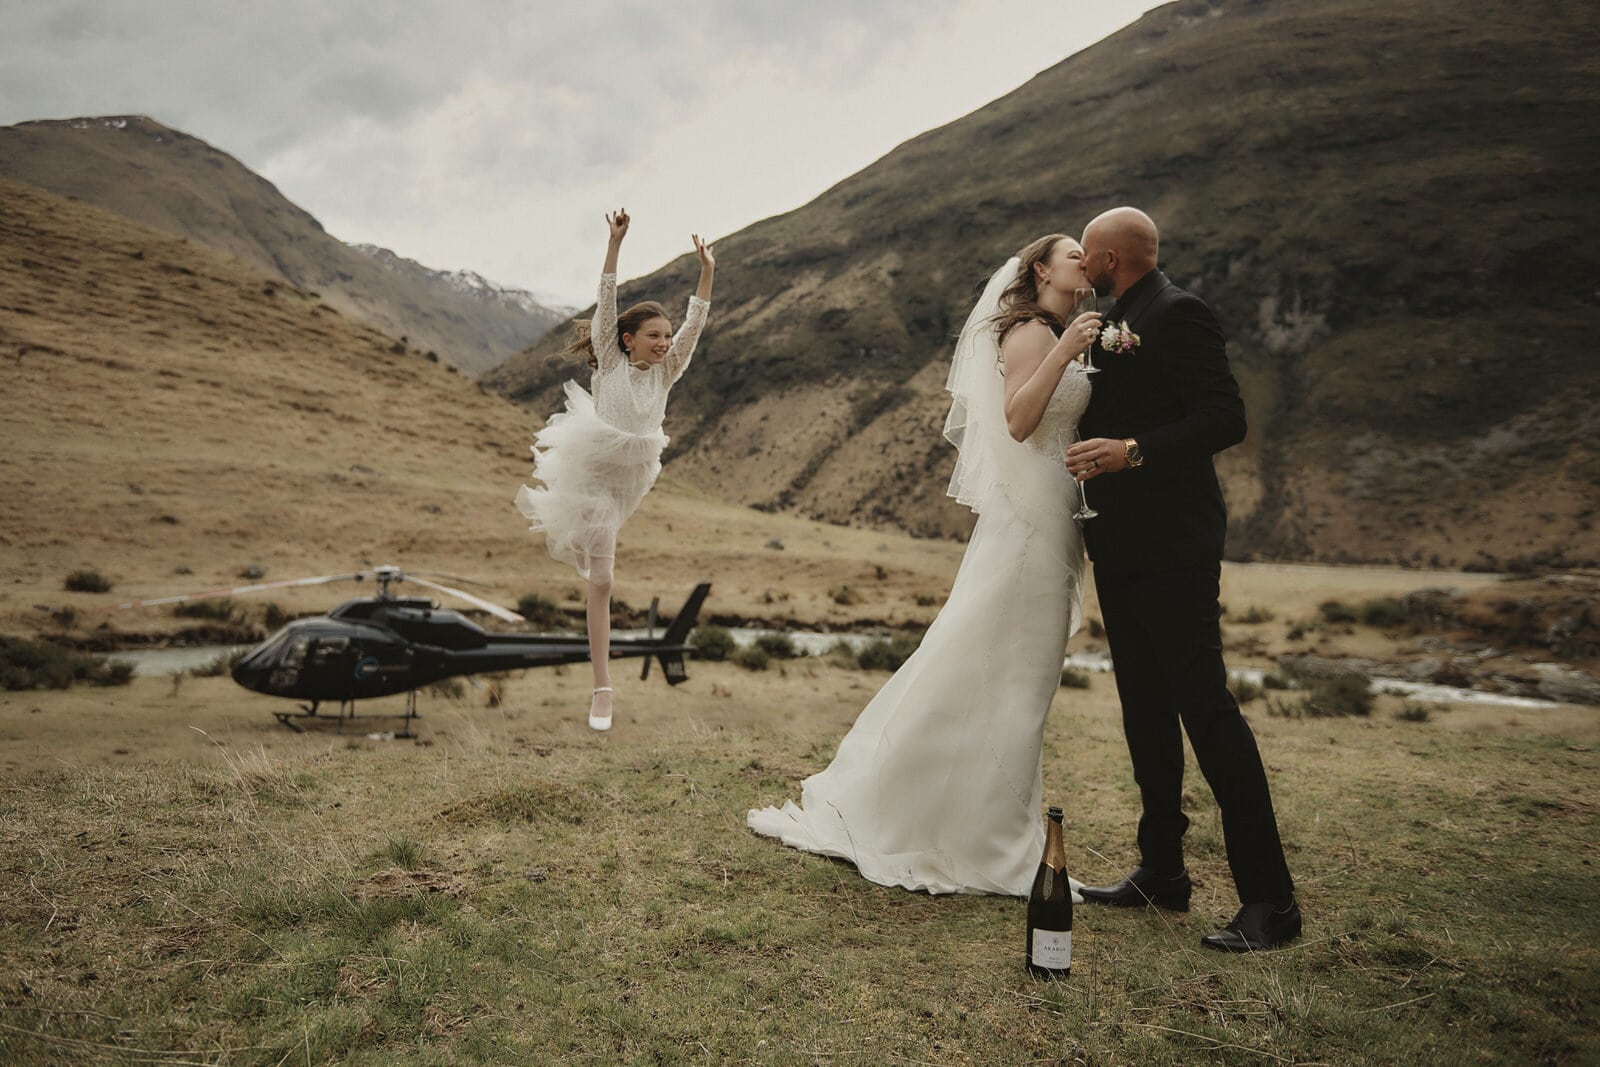 Erica & Vinny's Queenstown NZ Heli-Wedding Elopement